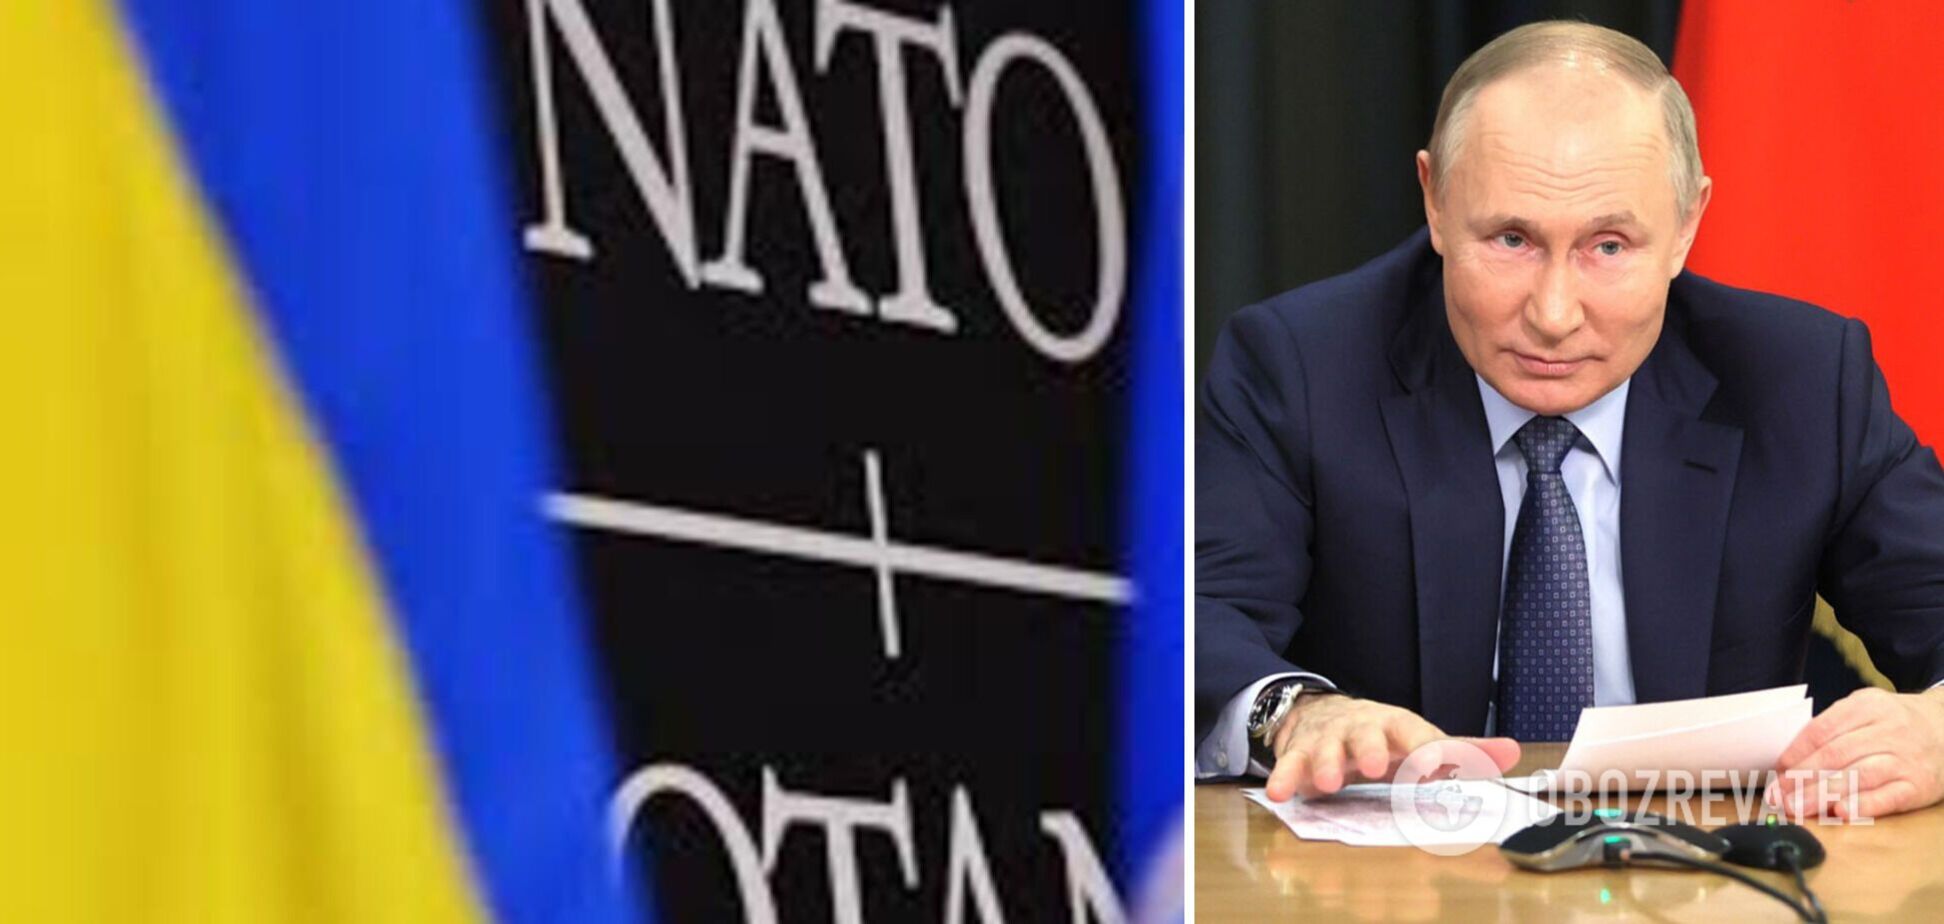 Важный урок: Путин 'хулиганит' там, где НАТО нет